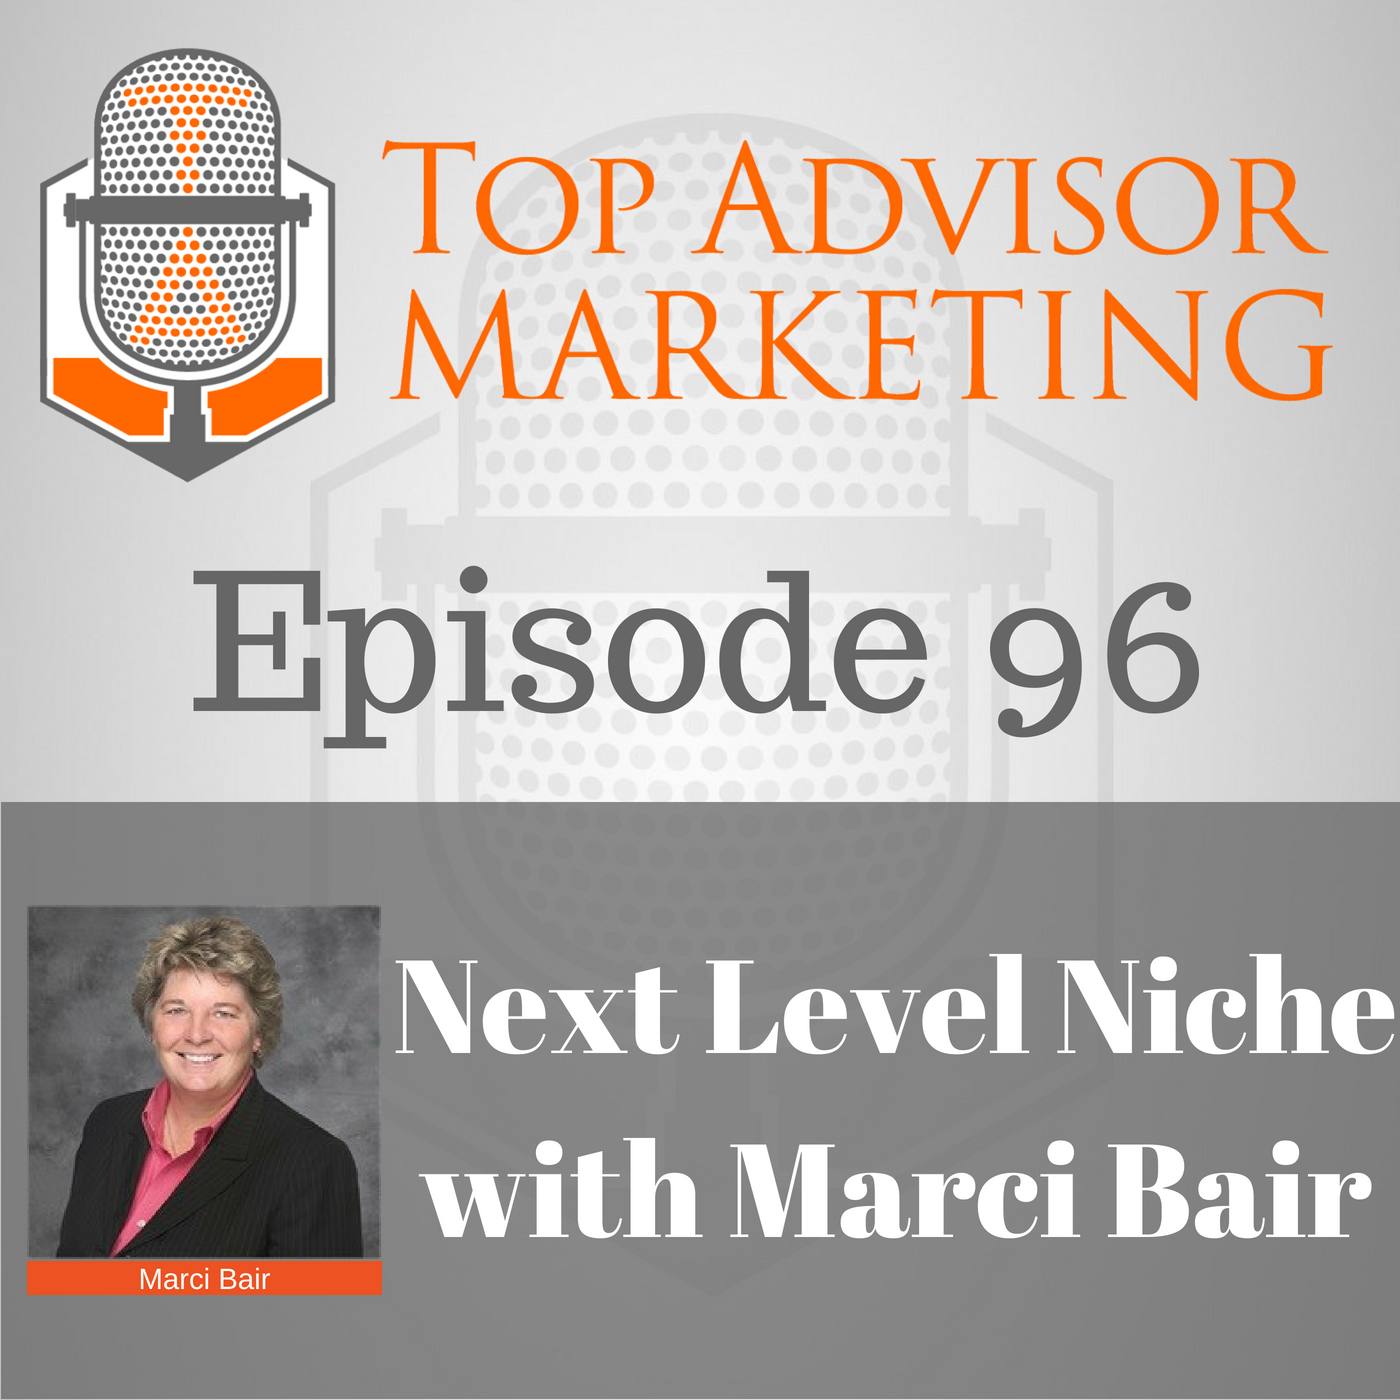 Episode 96 - Next Level Niche with Marci Bair